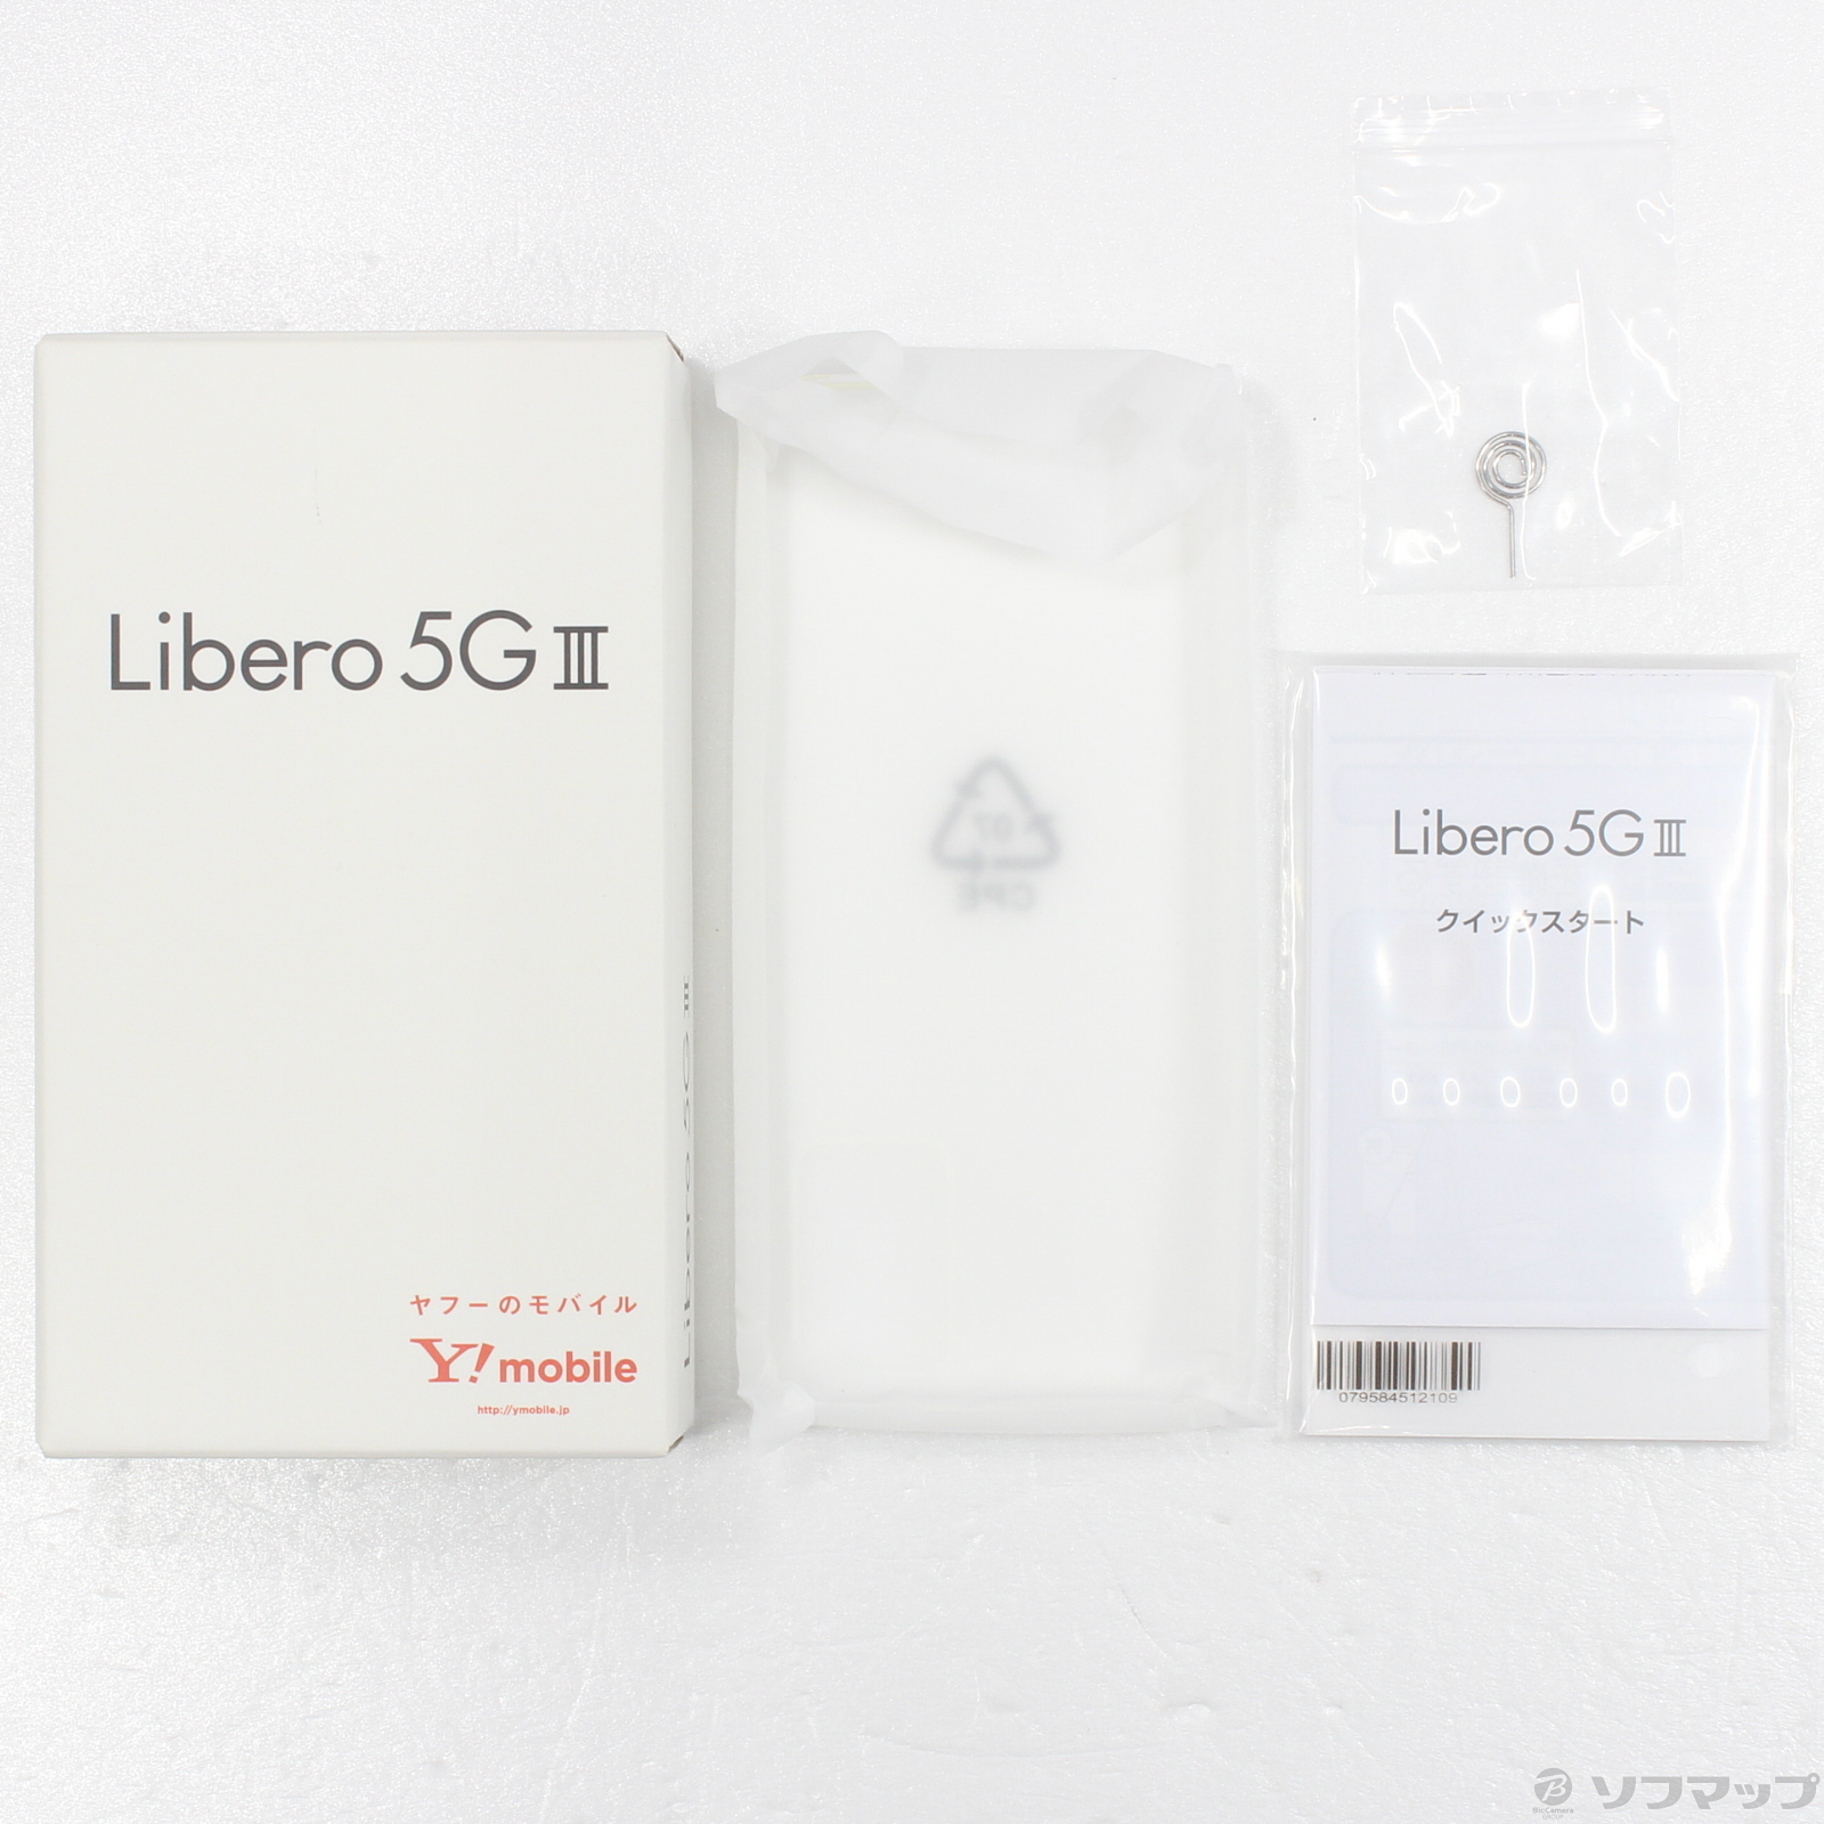 新品☆Libero 5G III ホワイト 64 GB Y!mobile - スマートフォン本体